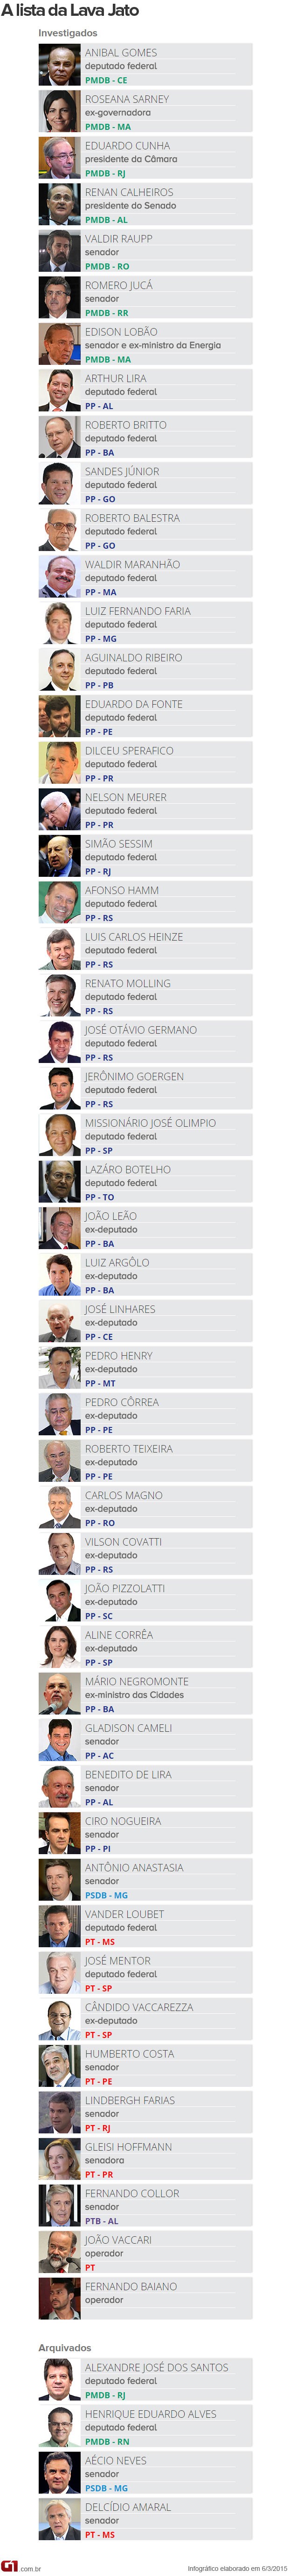 Lista dos políticos investigados na Operação Lava Jato (Foto: Editoria de Arte / G1)